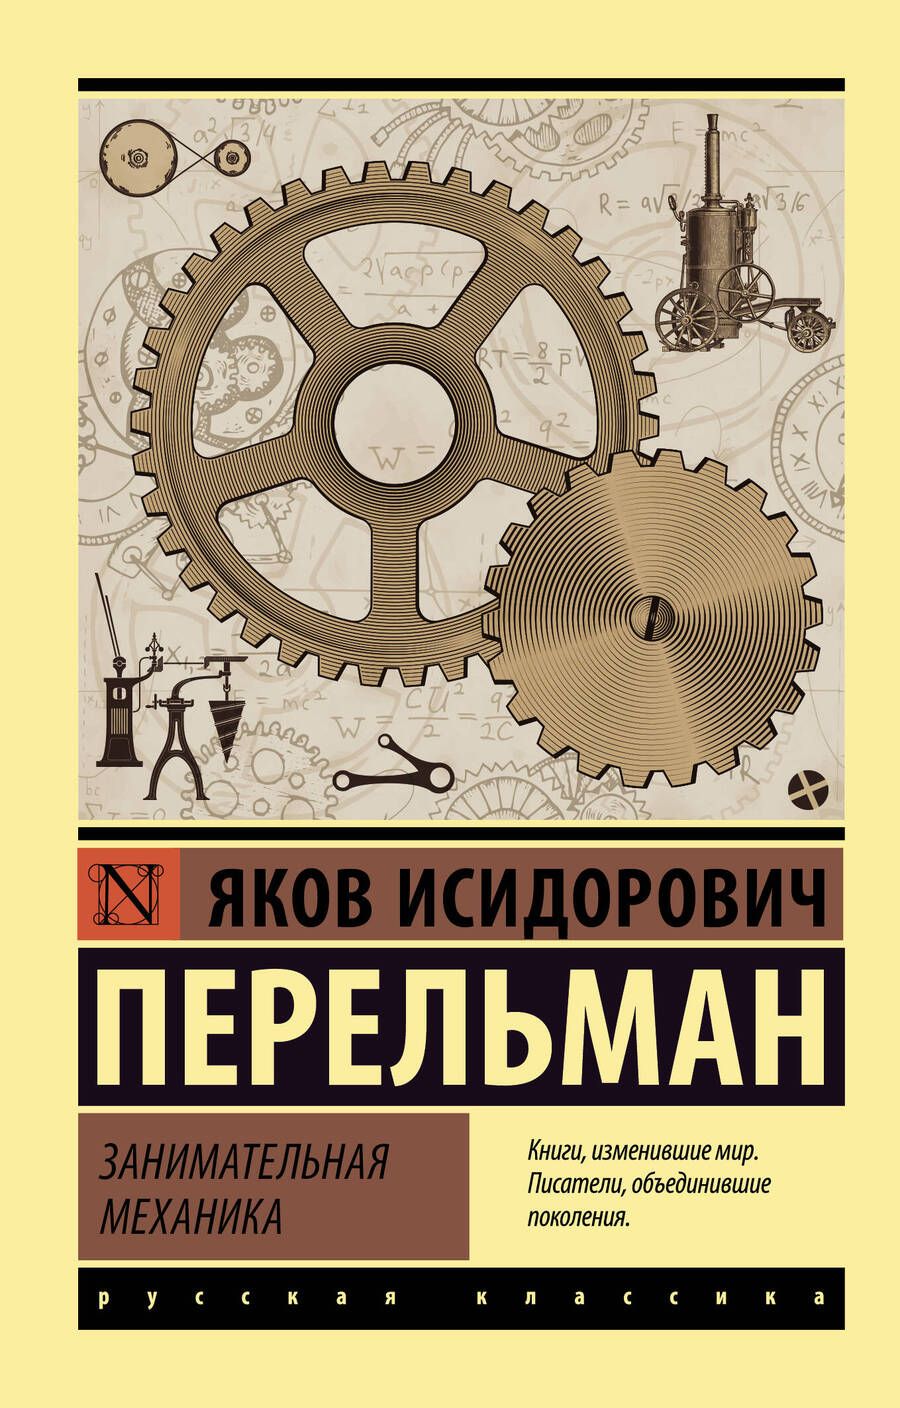 Обложка книги "Перельман: Занимательная механика"